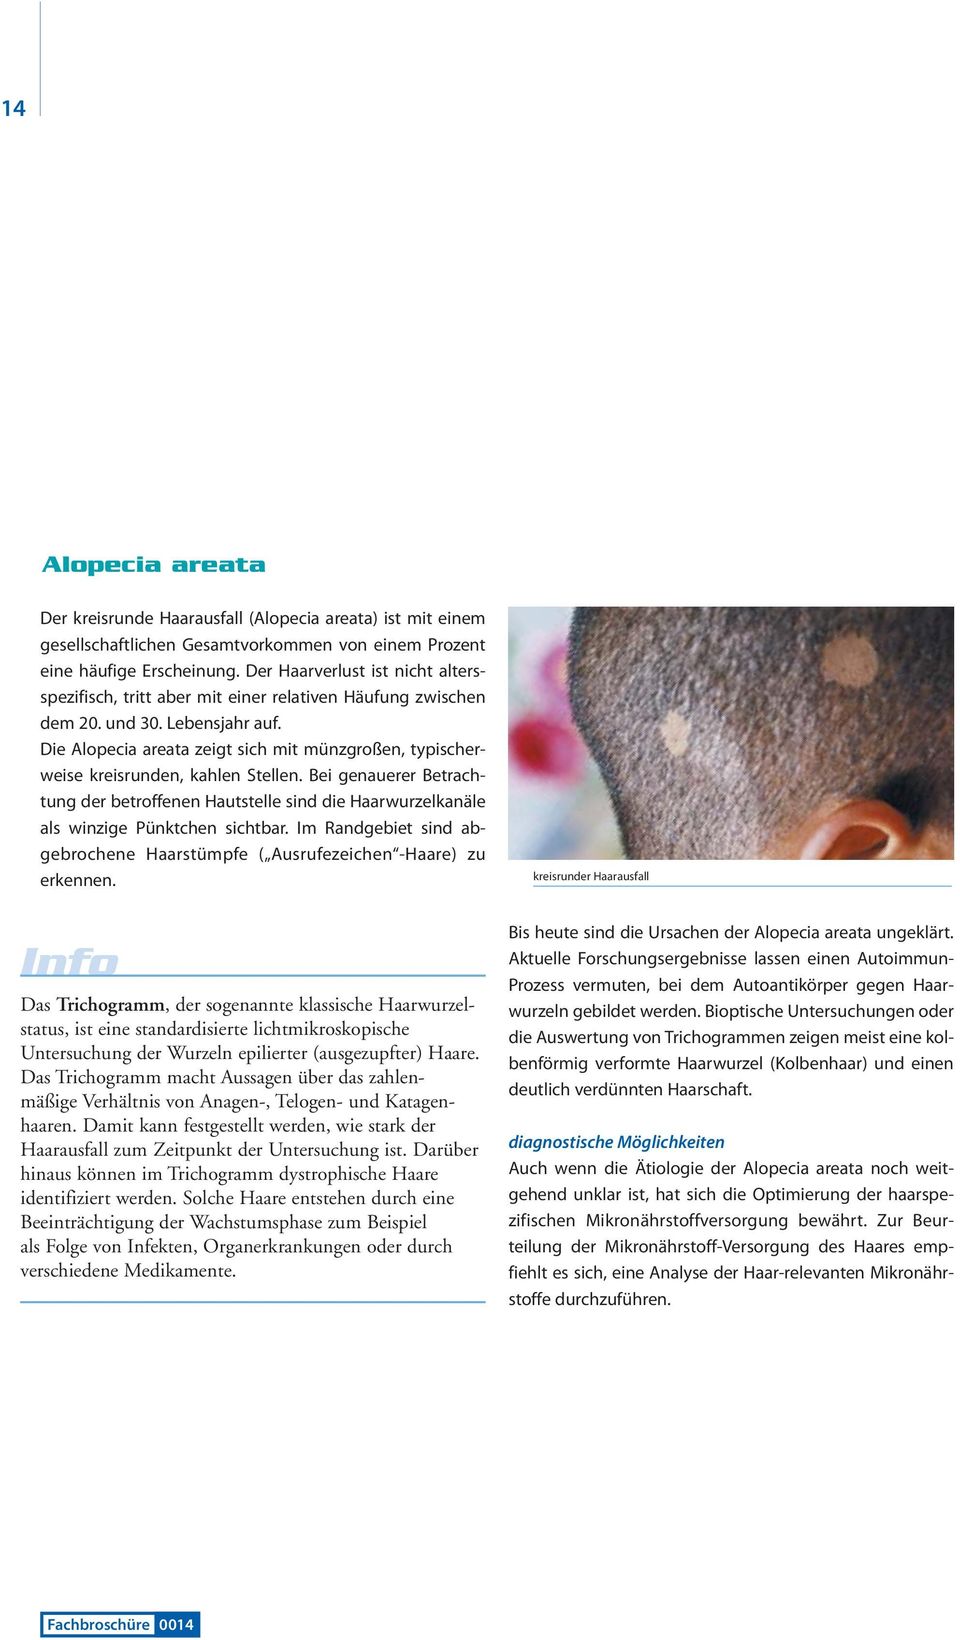 Die Alopecia areata zeigt sich mit münzgroßen, typischerweise kreisrunden, kahlen Stellen.